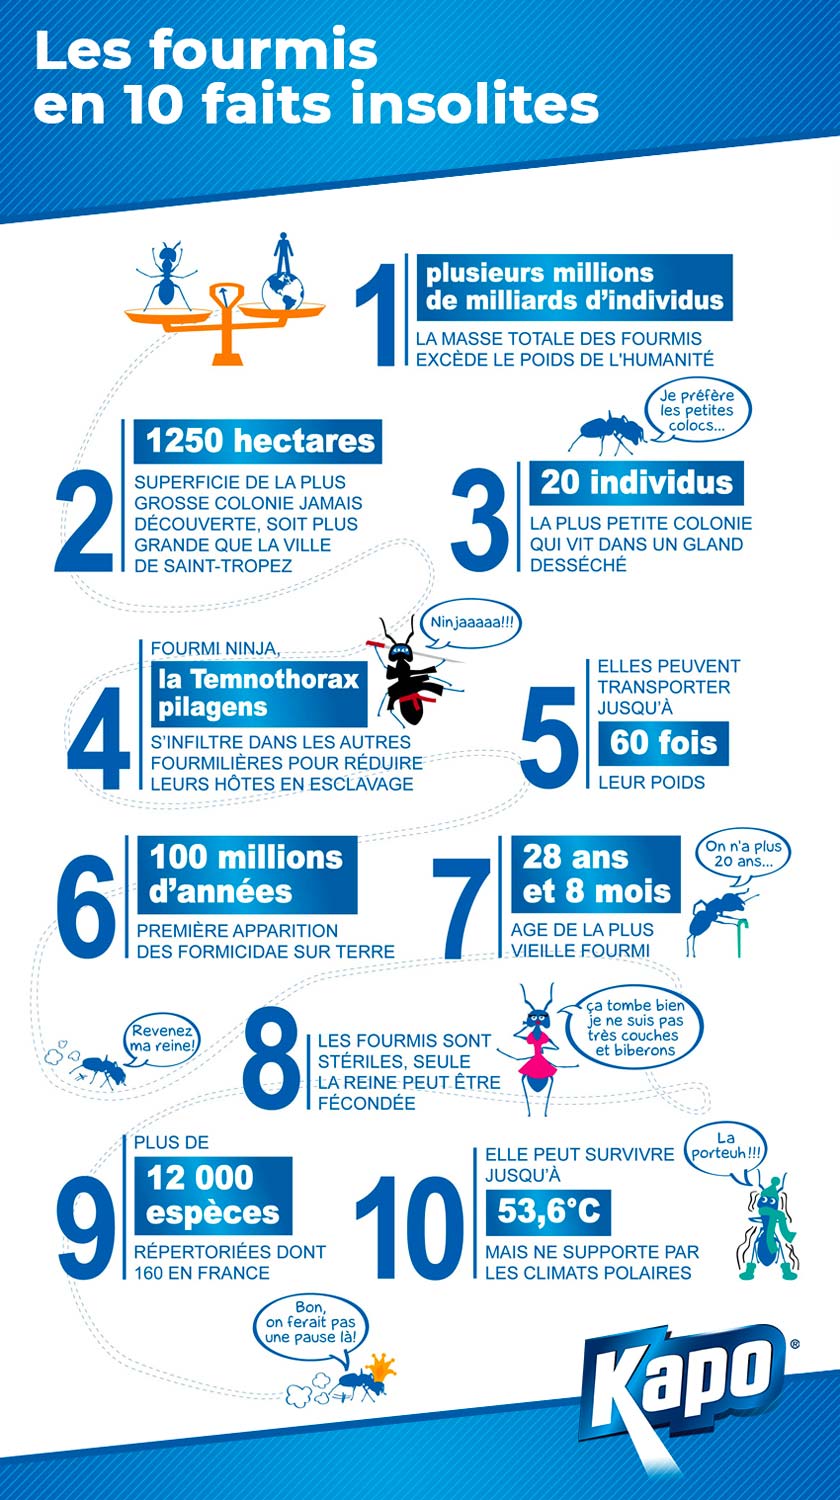 Infographie : 10 faits insolites sur les fourmis